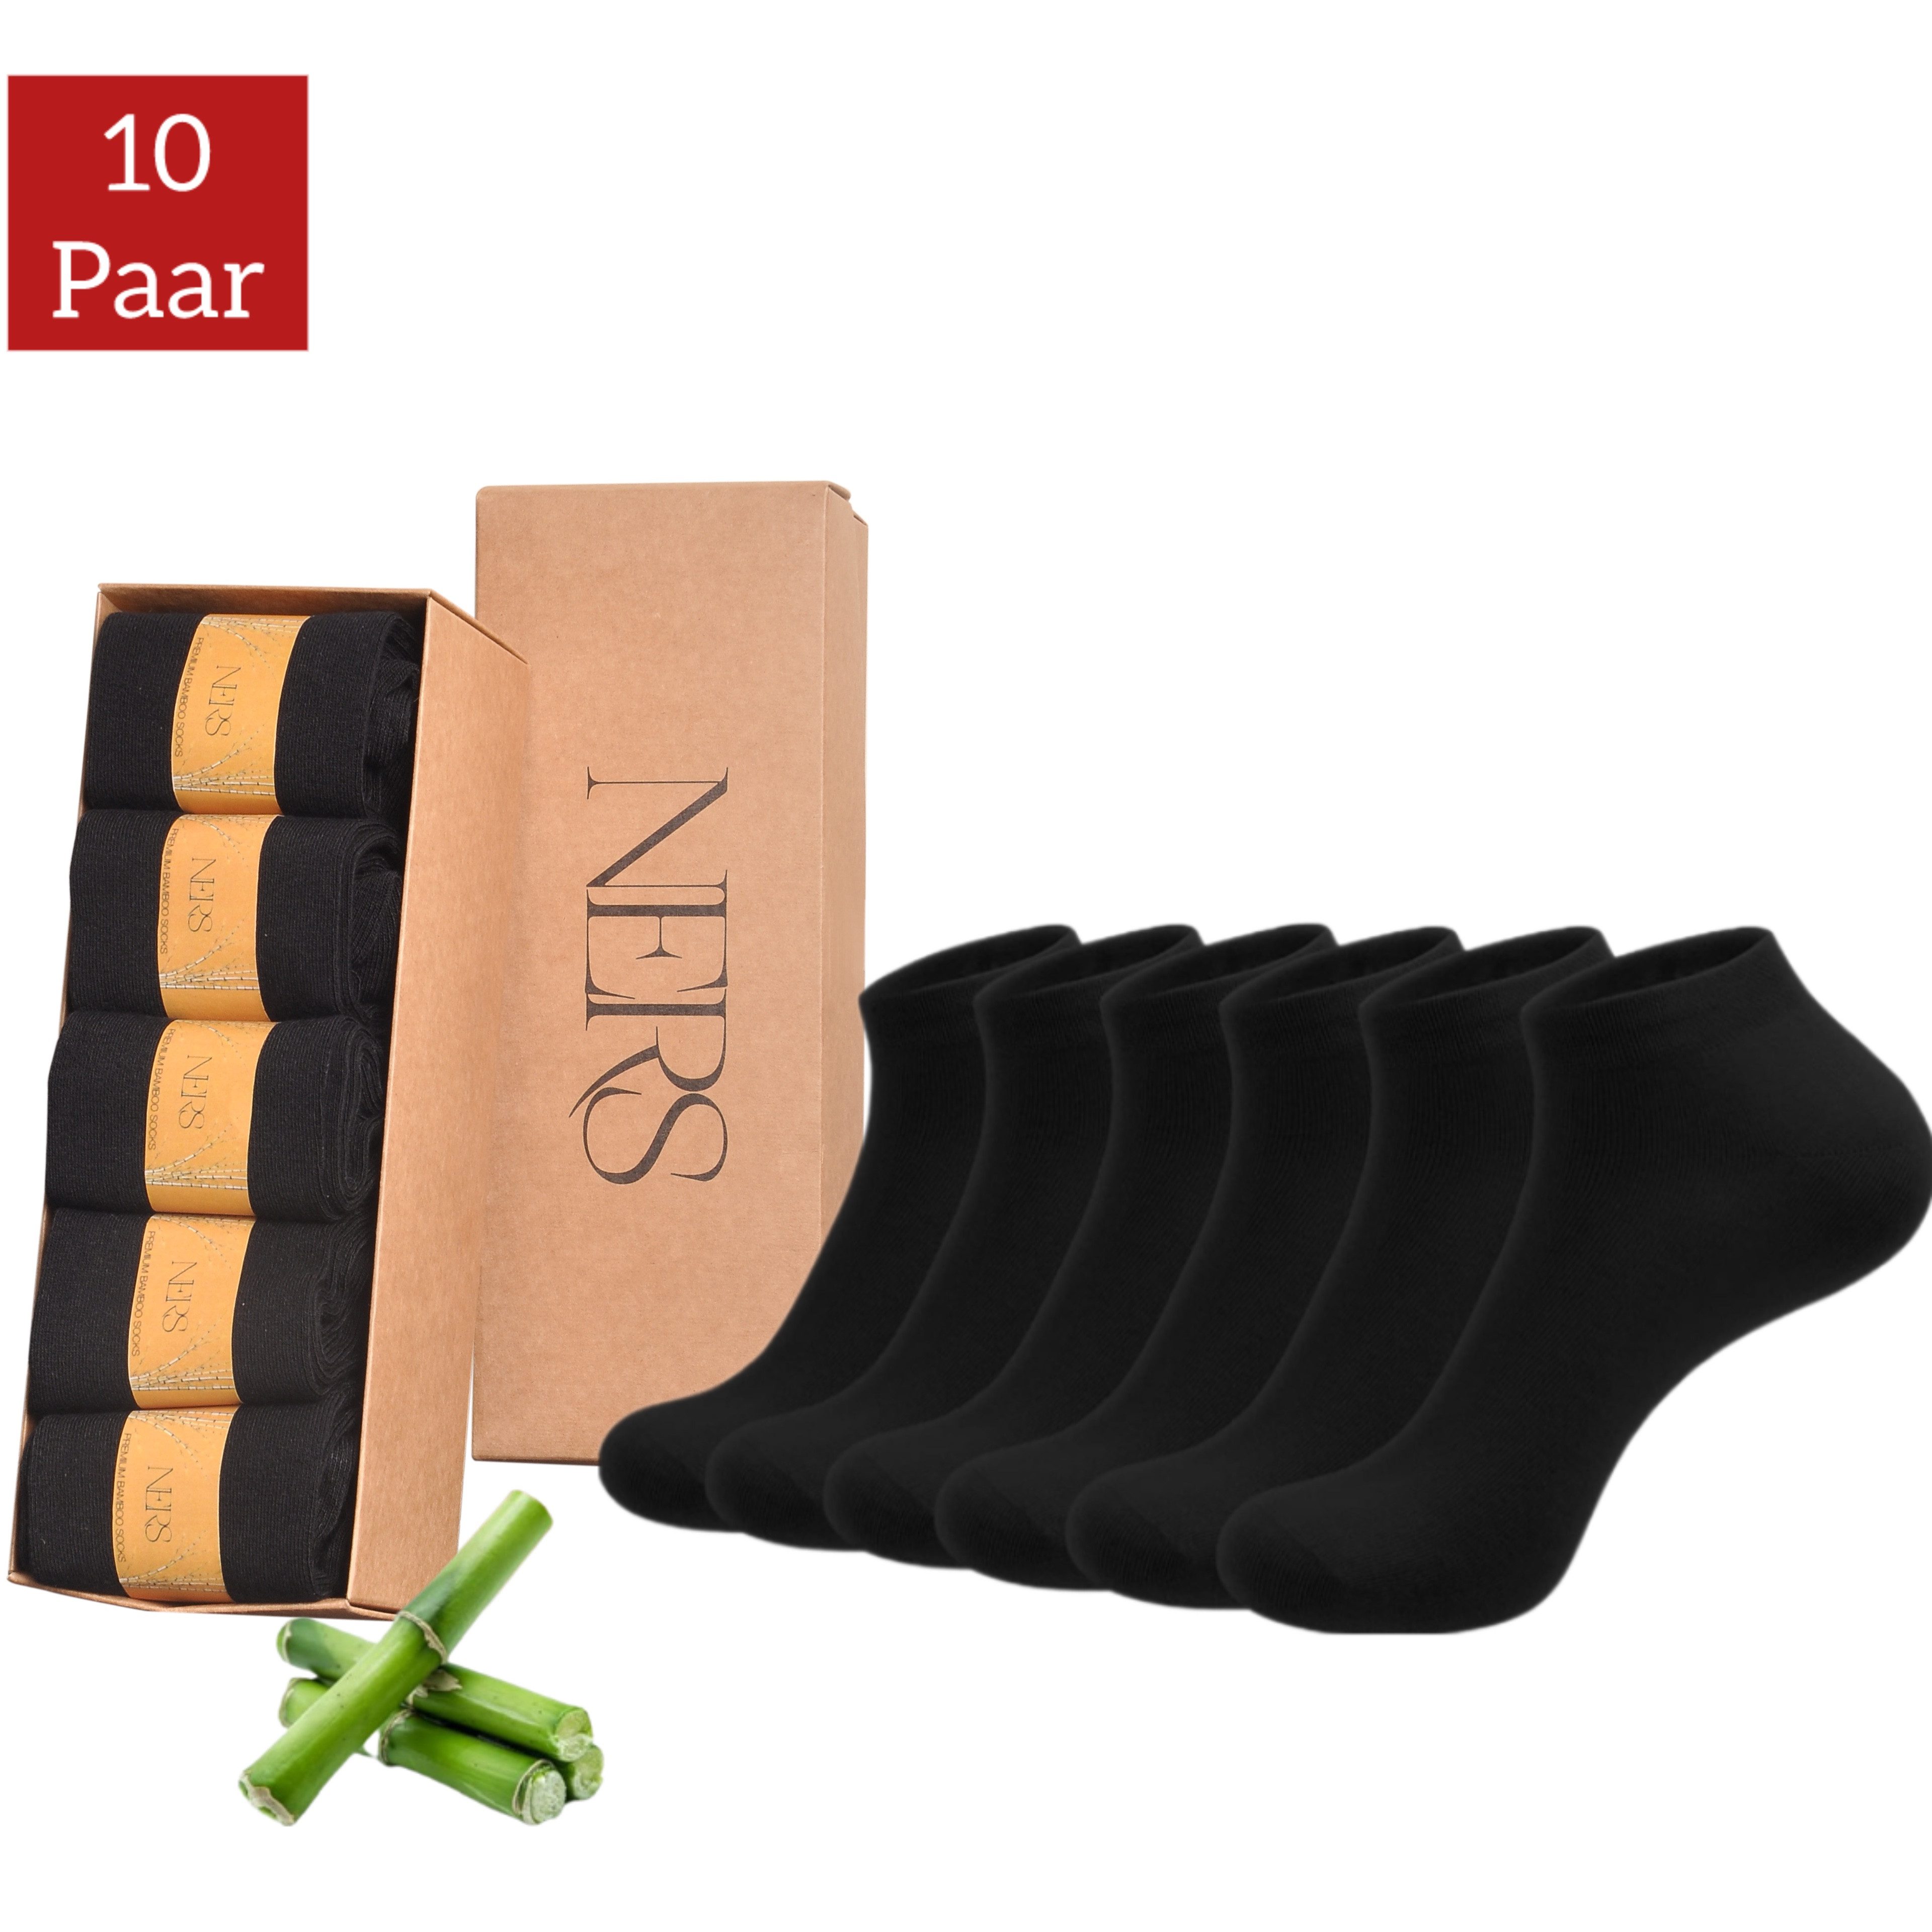 NERS Sneakersocken aus Bambus (10 Paar) für Damen & Herren, ohne Naht, gegen Schweißfüße (10-Paar) Bambussocken - Atmungsaktiv - Ohne Gummi - Naturfreundlich